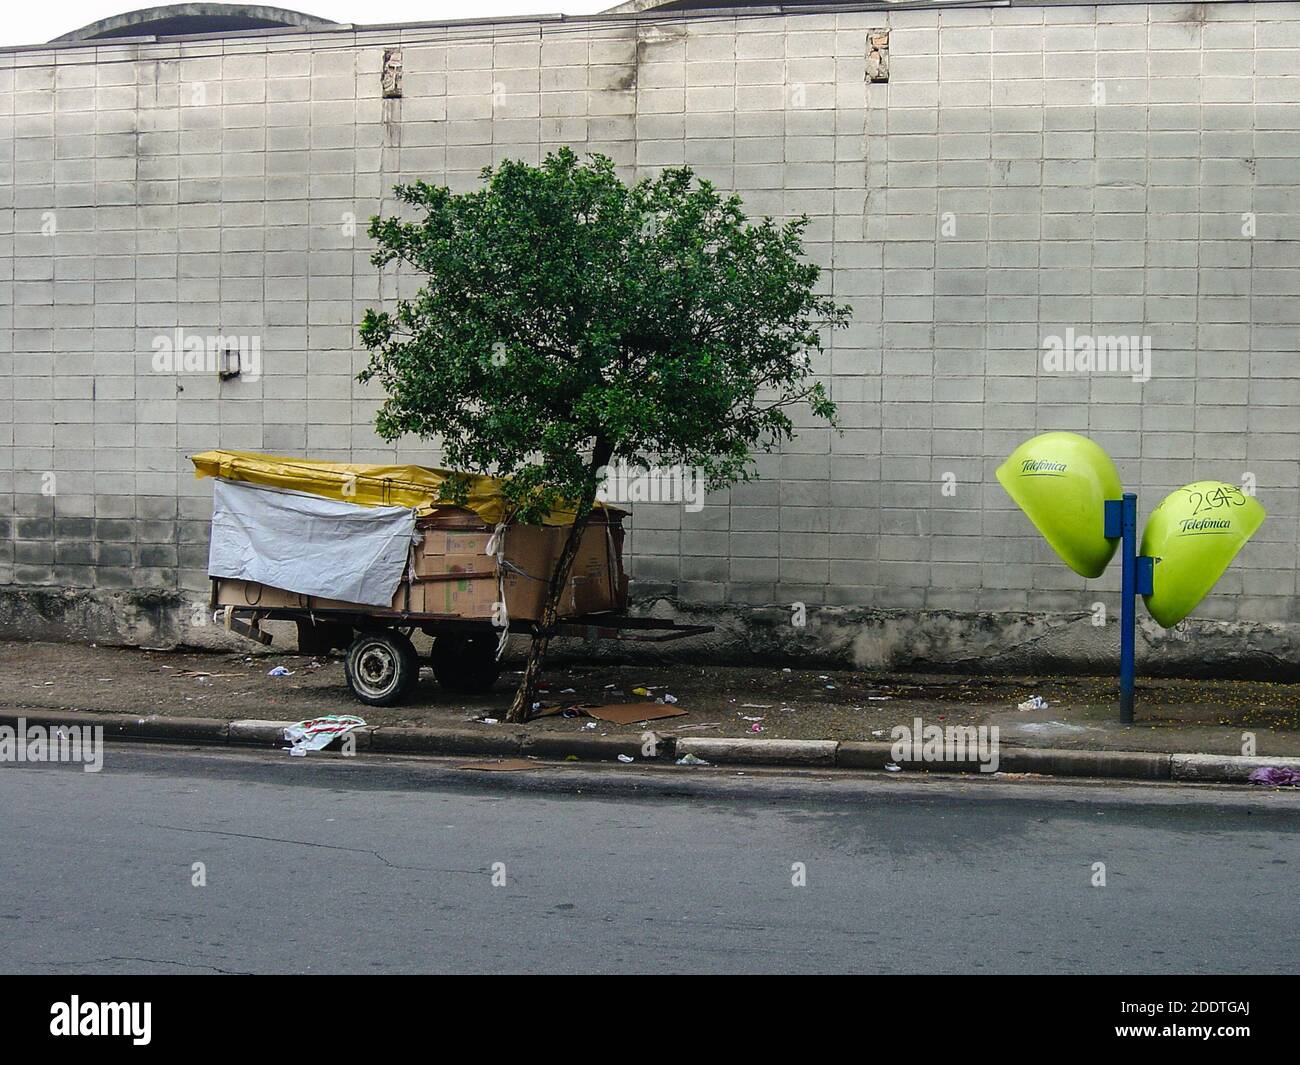 Sao Paulo, Brésil. 16 octobre 2010. Un abri roulant pour sans-abri fait de chariot à main est vu lié à l'arbre au début de la matinée, Caninde, Sao Paulo, Brésil. Banque D'Images